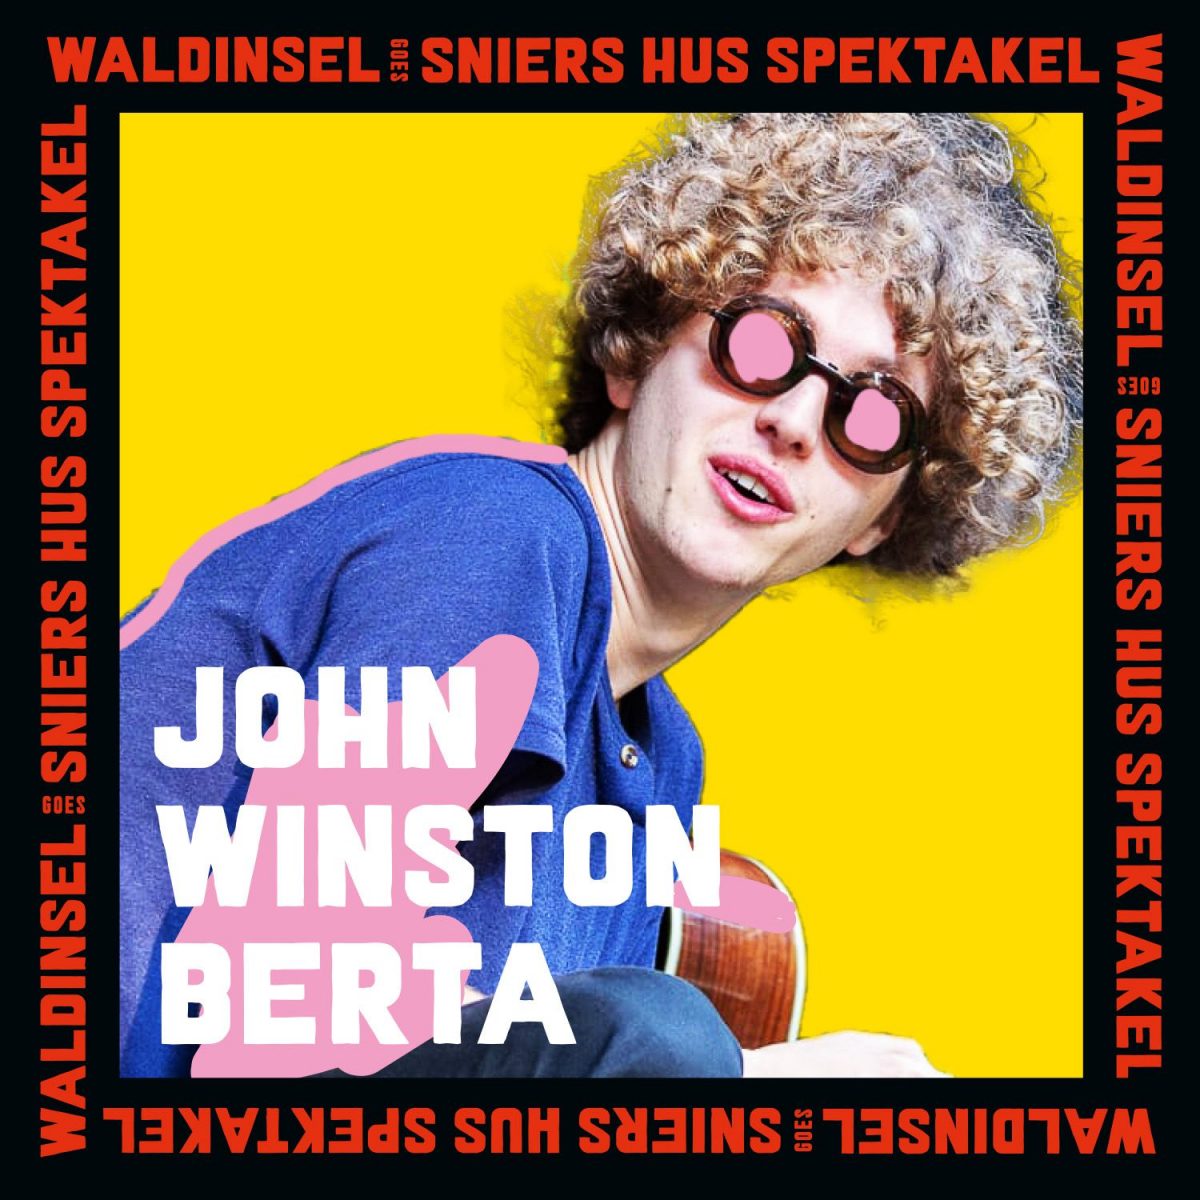 Waldinsel goes Sniers Hus Spektakel Vol. 2  John Winston Berta 